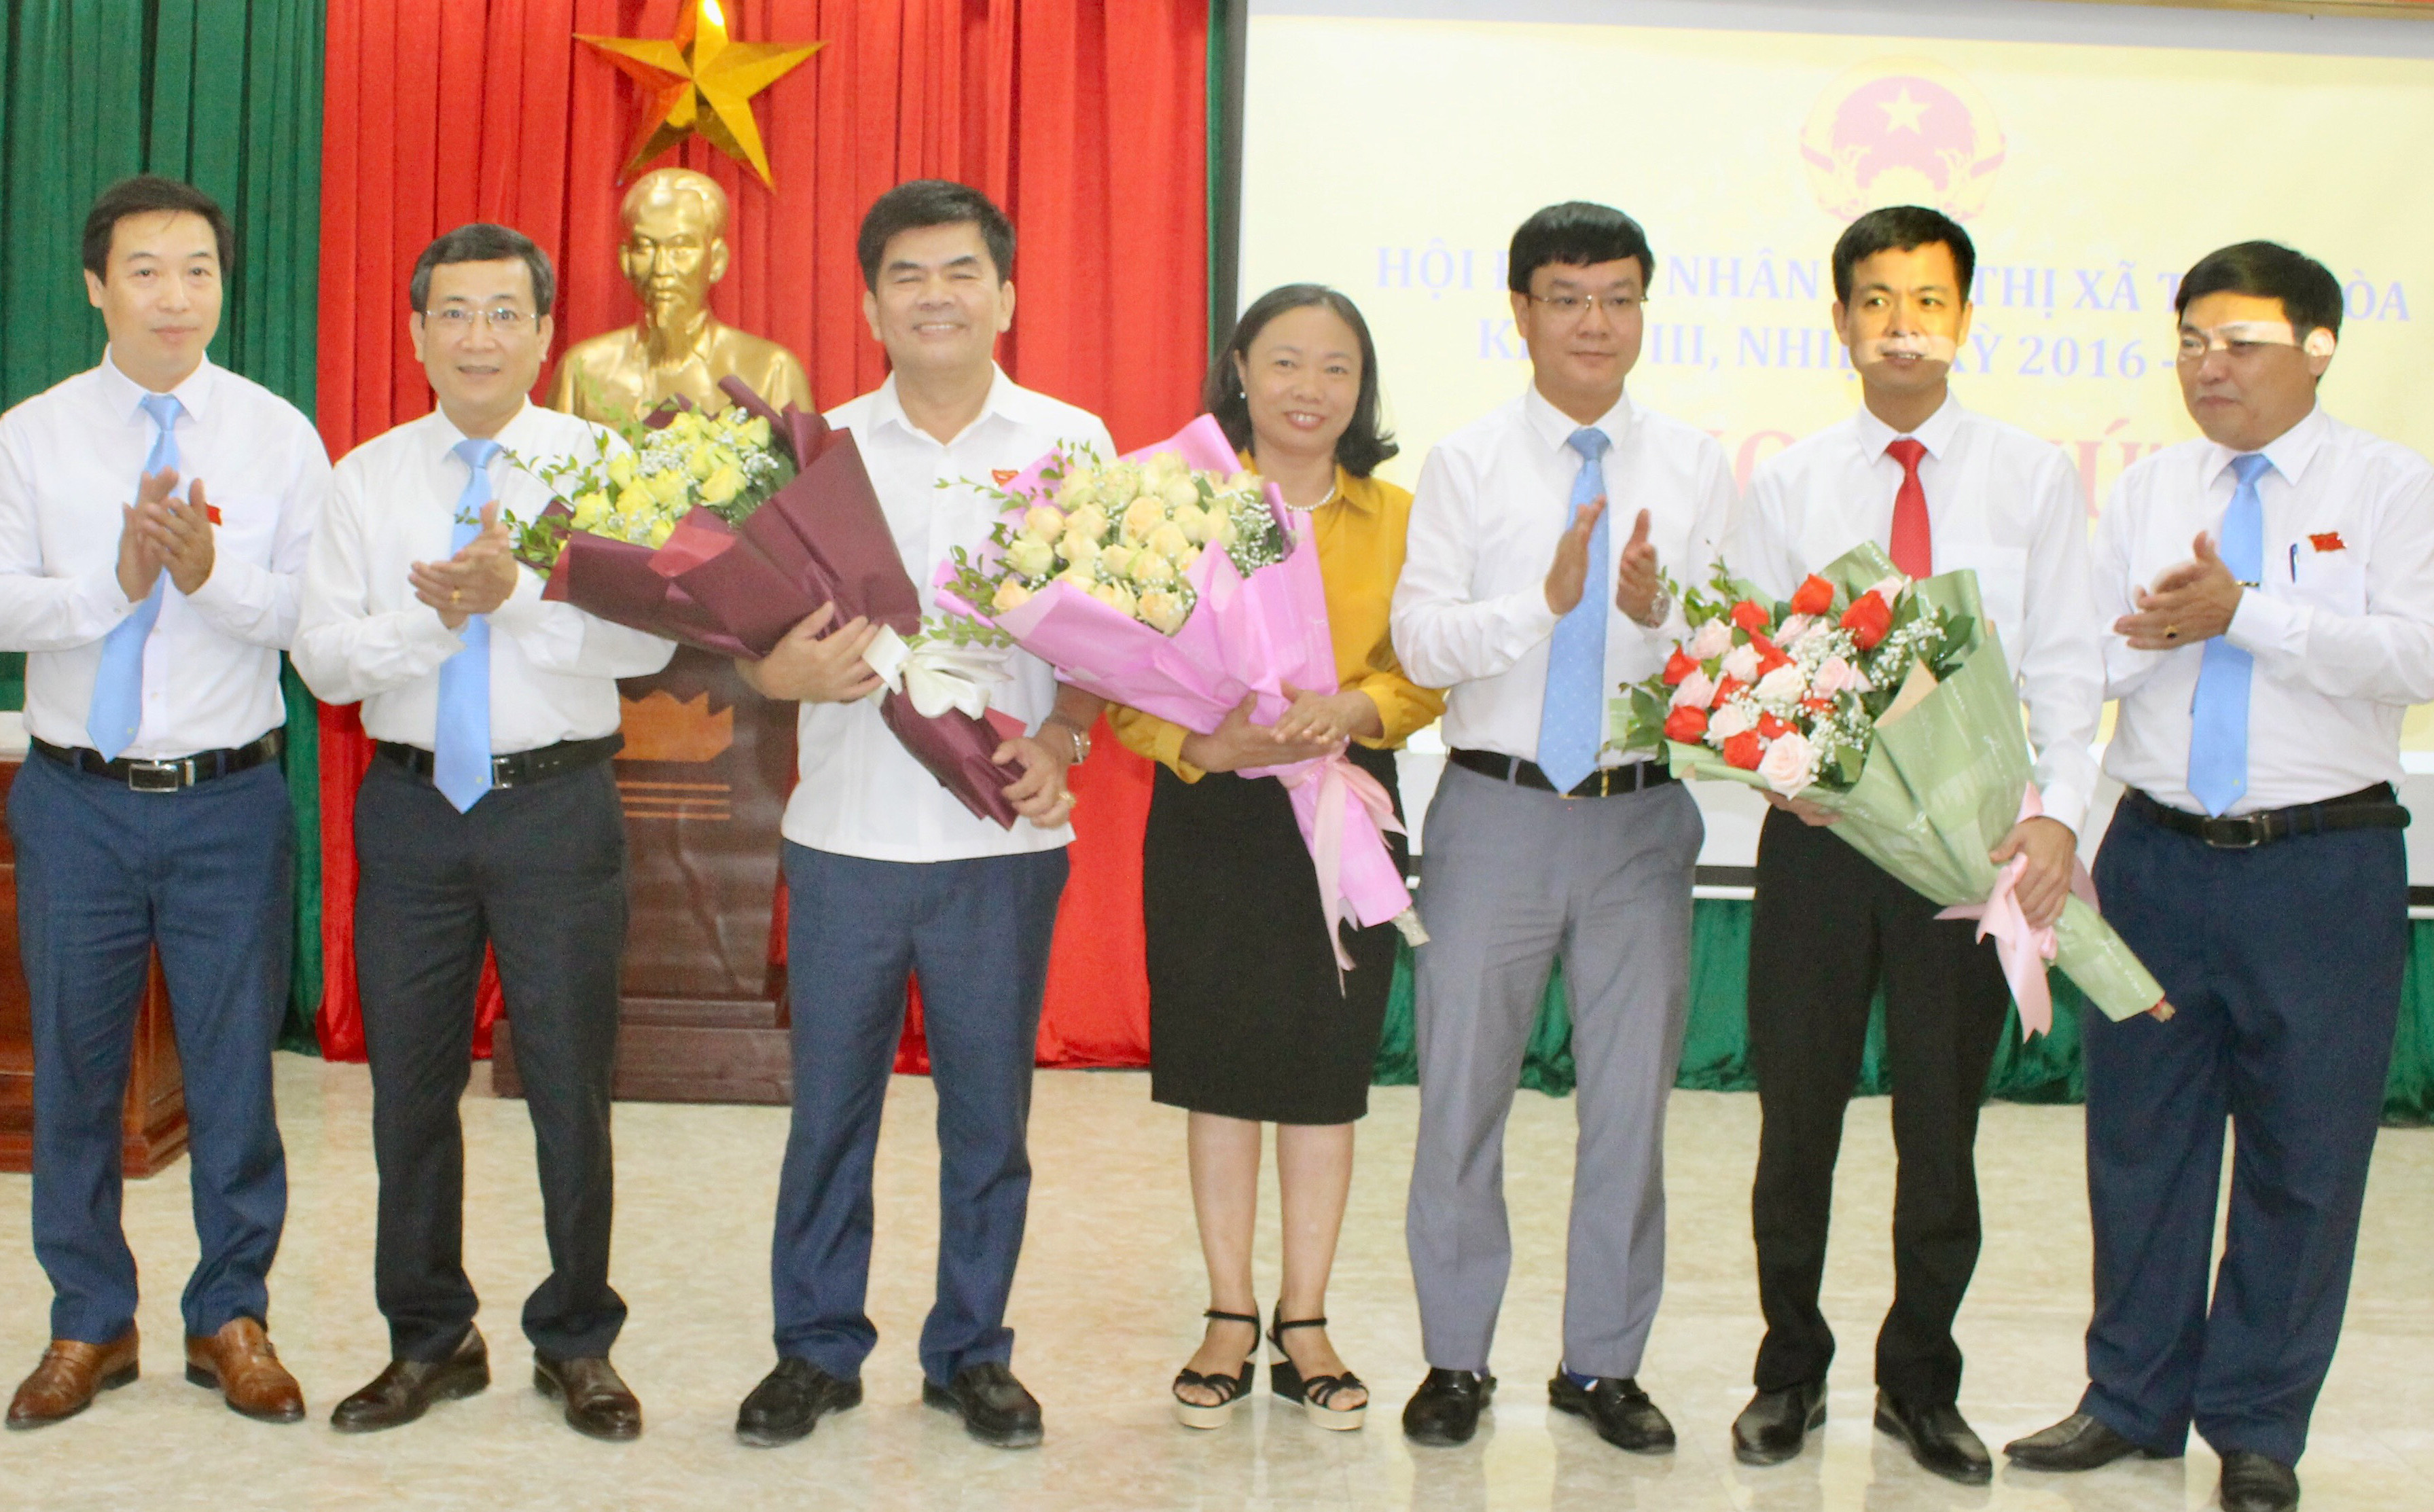 Lãnh đạo Thị xã Thái Hòa tặng hoa chúc mừng đồng chí Hồ Thanh Phong, Phạm Văn Thạch và đồng chí Trần Thị Thu. Ảnh Hoàng Thủy